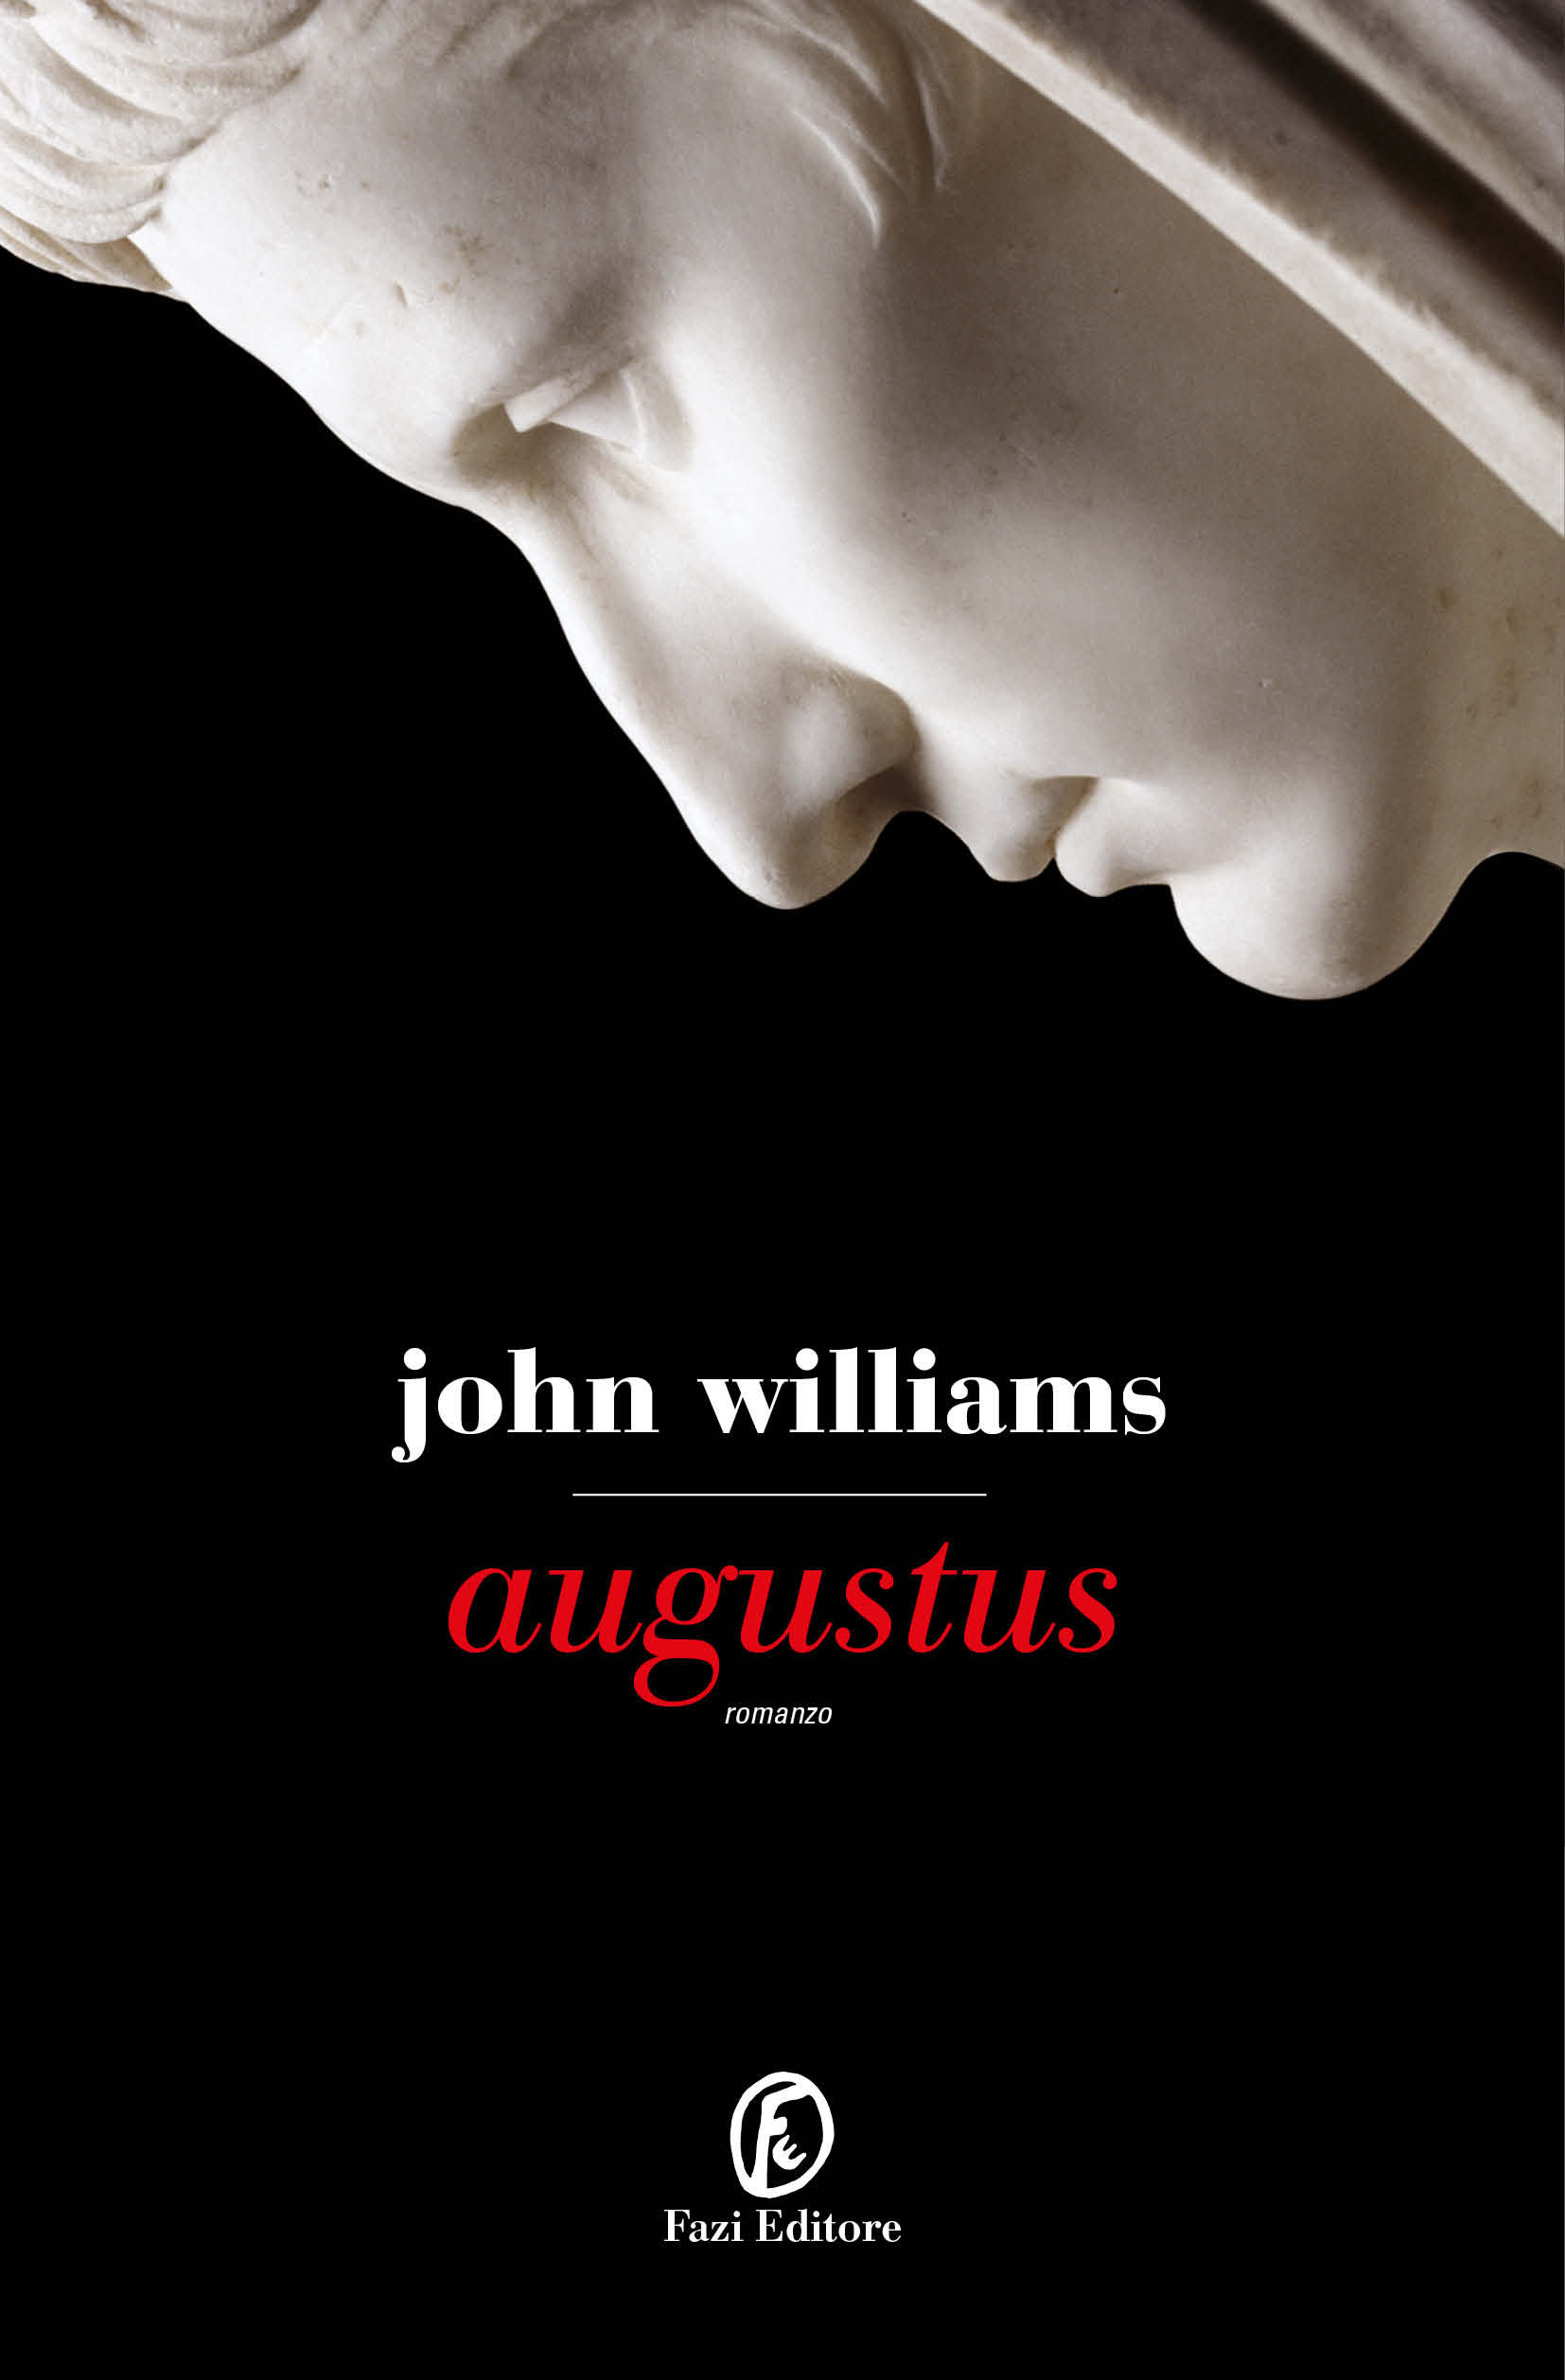 augustus john williams book review